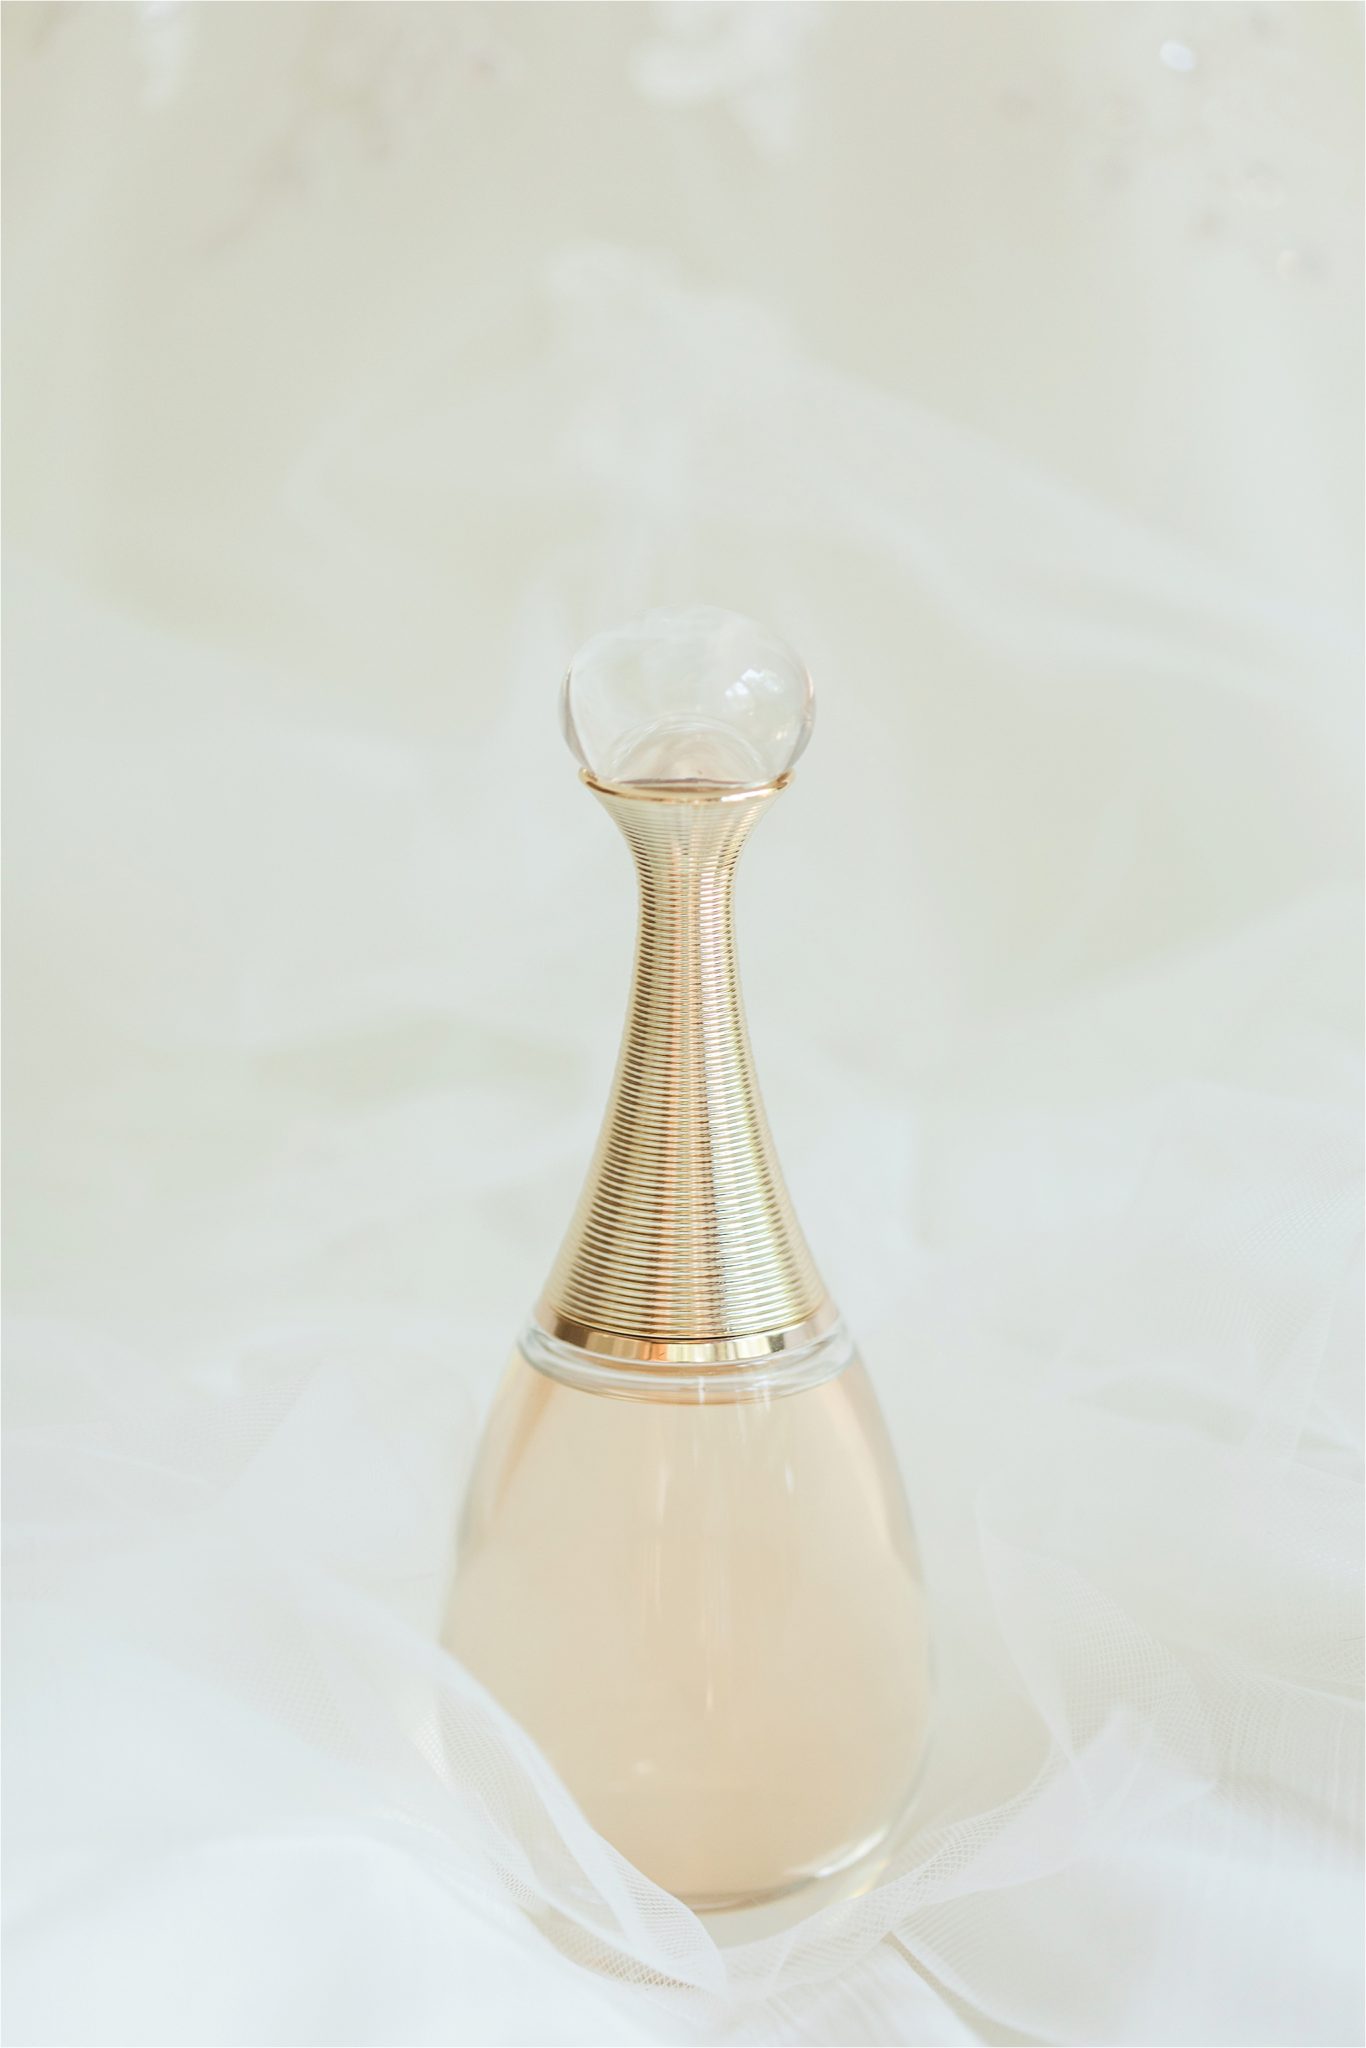 Bridal perfume-parfume-beautiful perfume bottle-modern shape-alabama wedding photographer